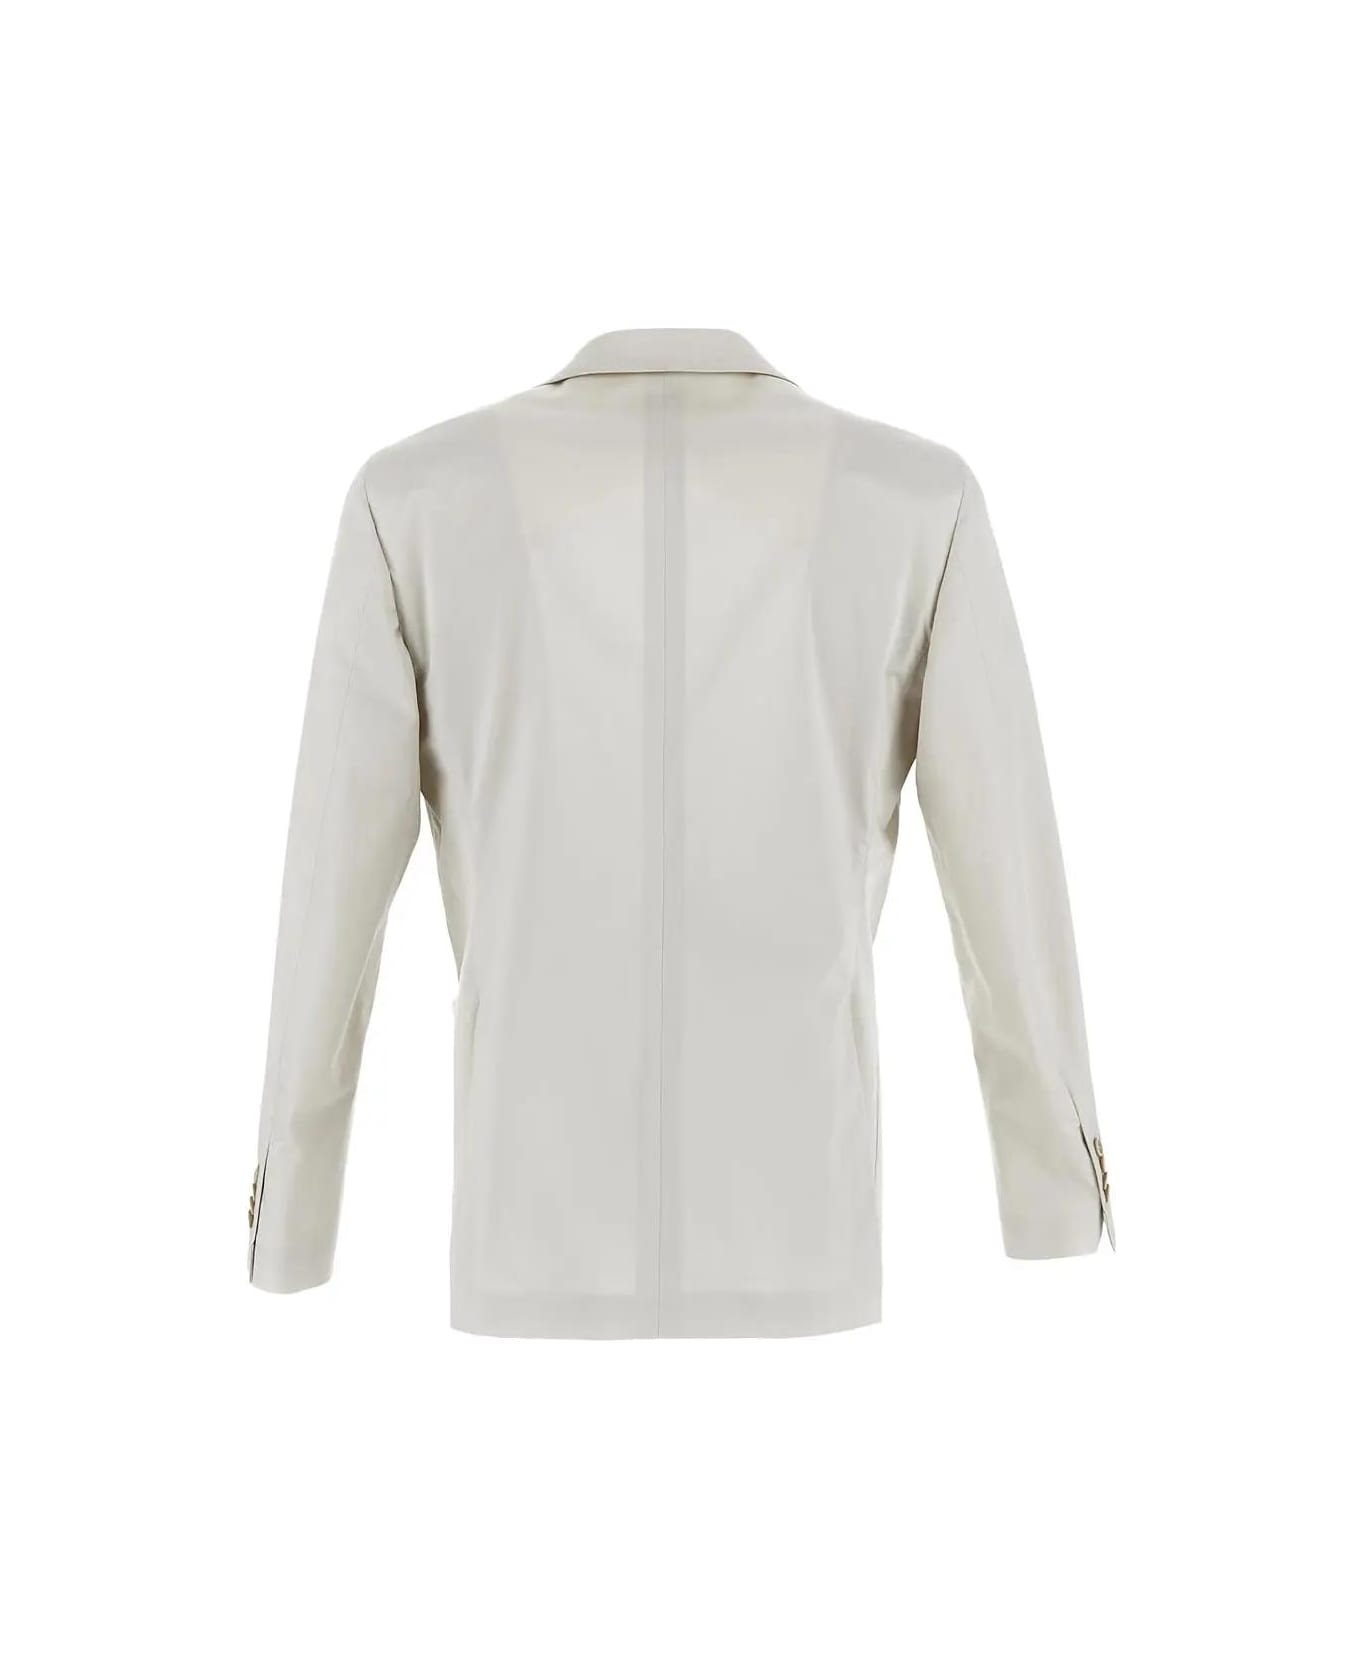 Lardini Classic Suit - Bianco スーツ